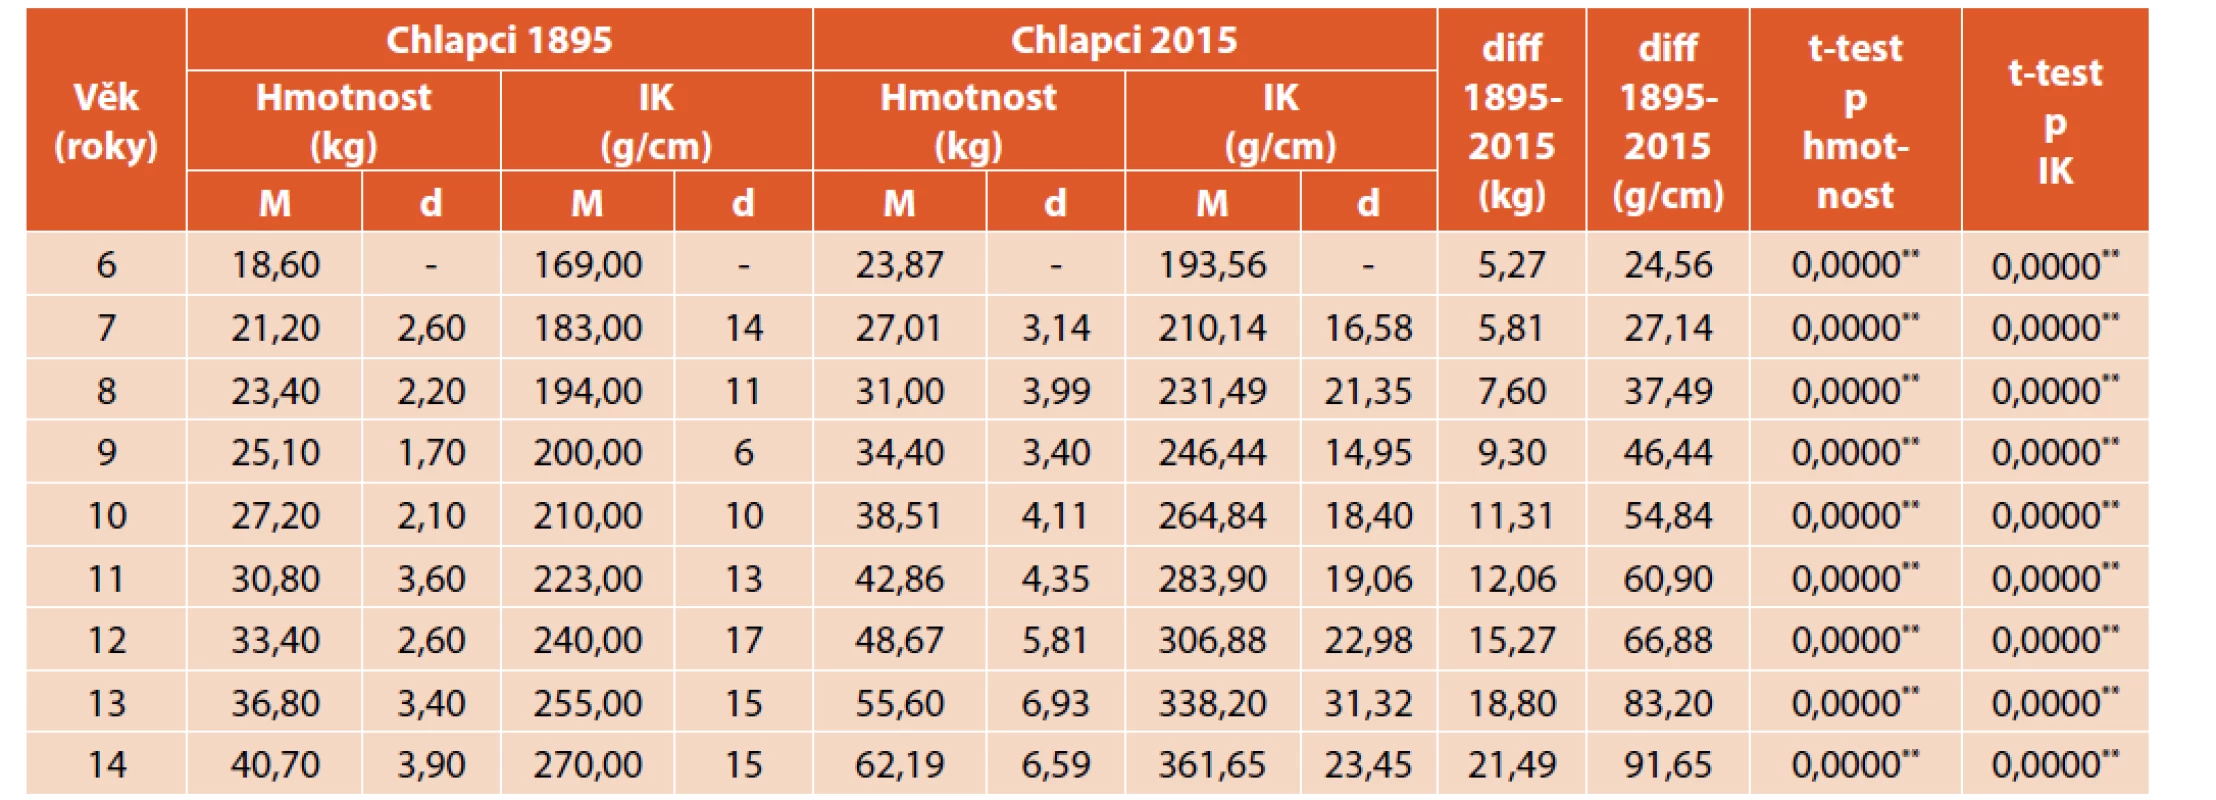 Porovnání tělesné hmotnosti (kg) a indexu korpulence (g/cm) chlapců z roku 1895 a 2015.